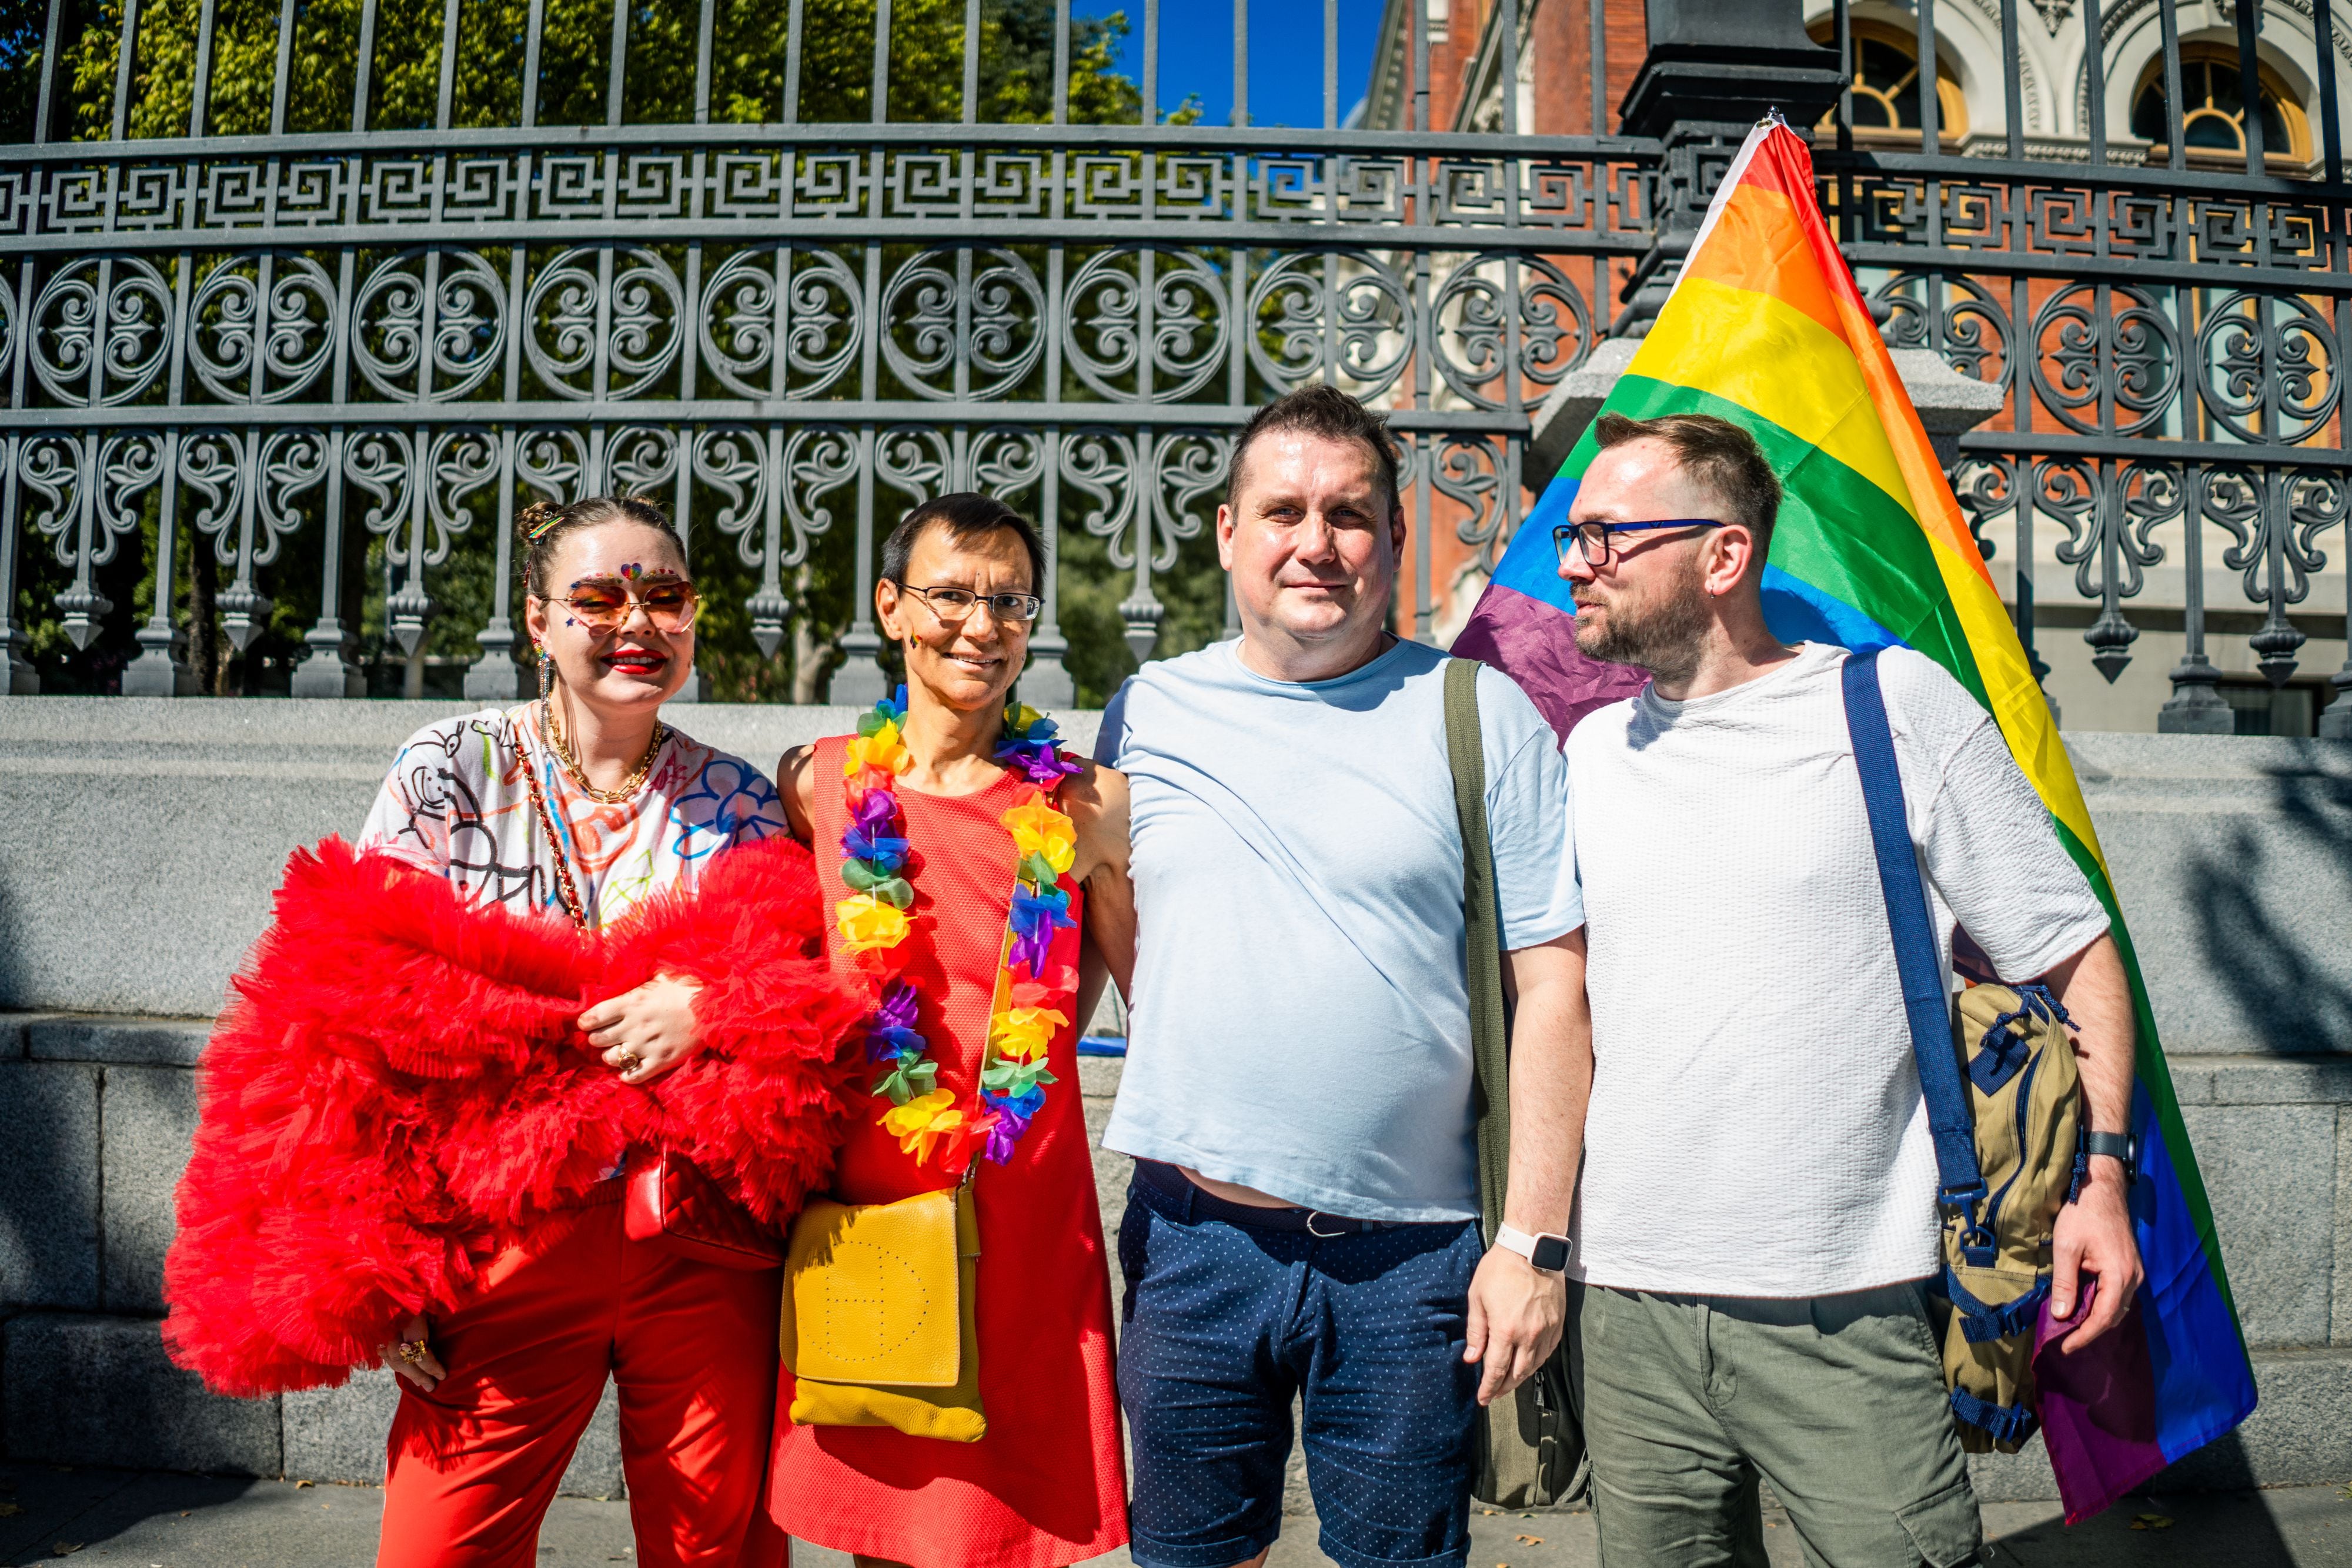  De izquierda a derecha, Gala Lyuva, Boris, y Maxim, todos exiliados rusos, acudiendo juntos al Orgullo este sábado en Madrid.